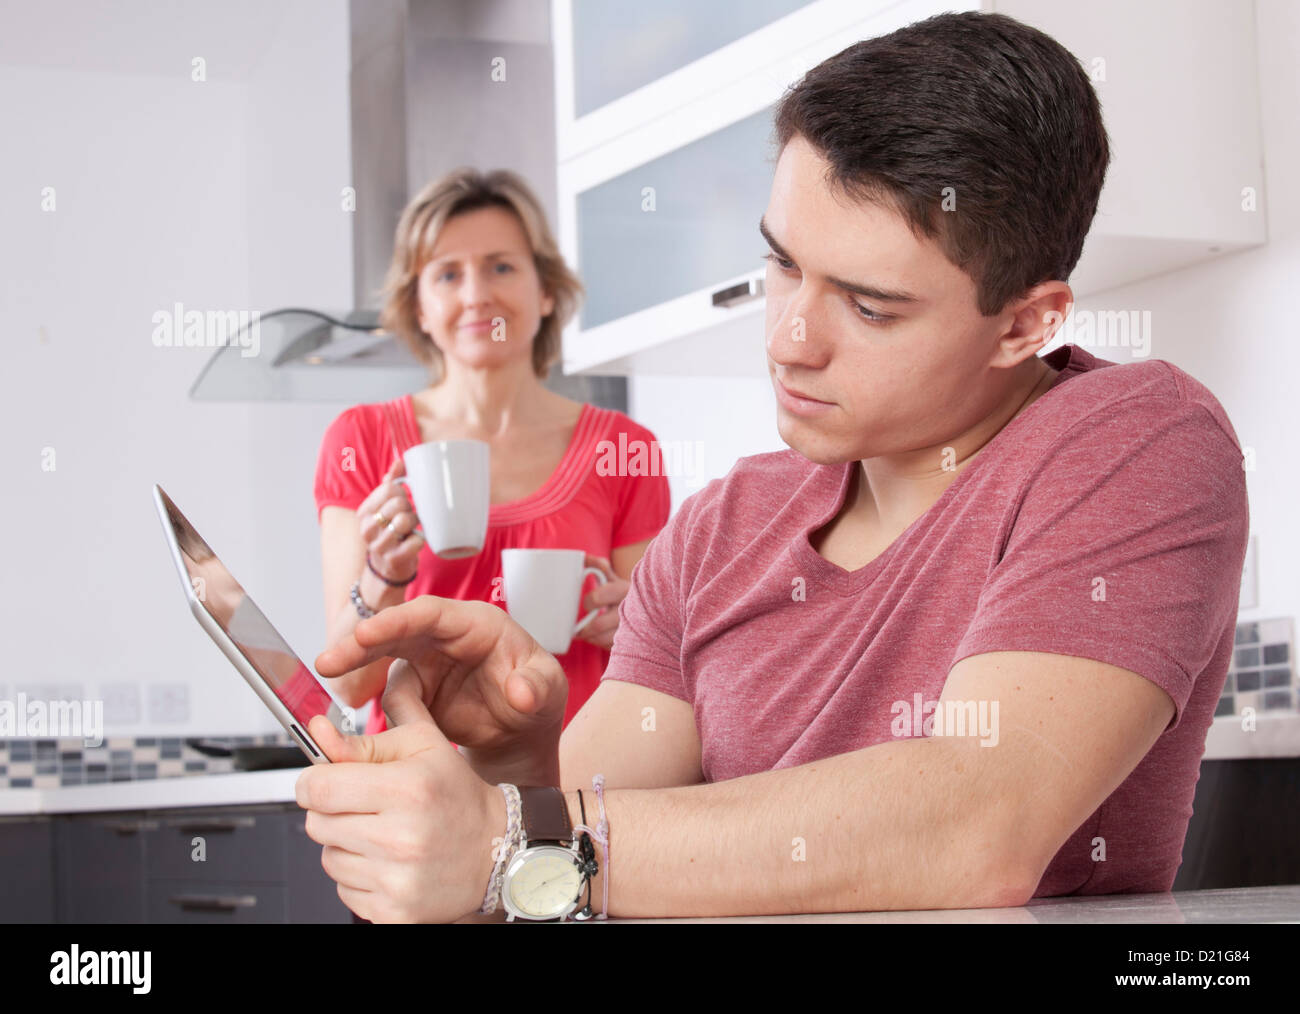 Jeune homme à l'aide d'une tablette numérique à la recherche à l'écran ou moniteur. Situé dans une cuisine moderne une femme tenant deux mugs sourit. Banque D'Images